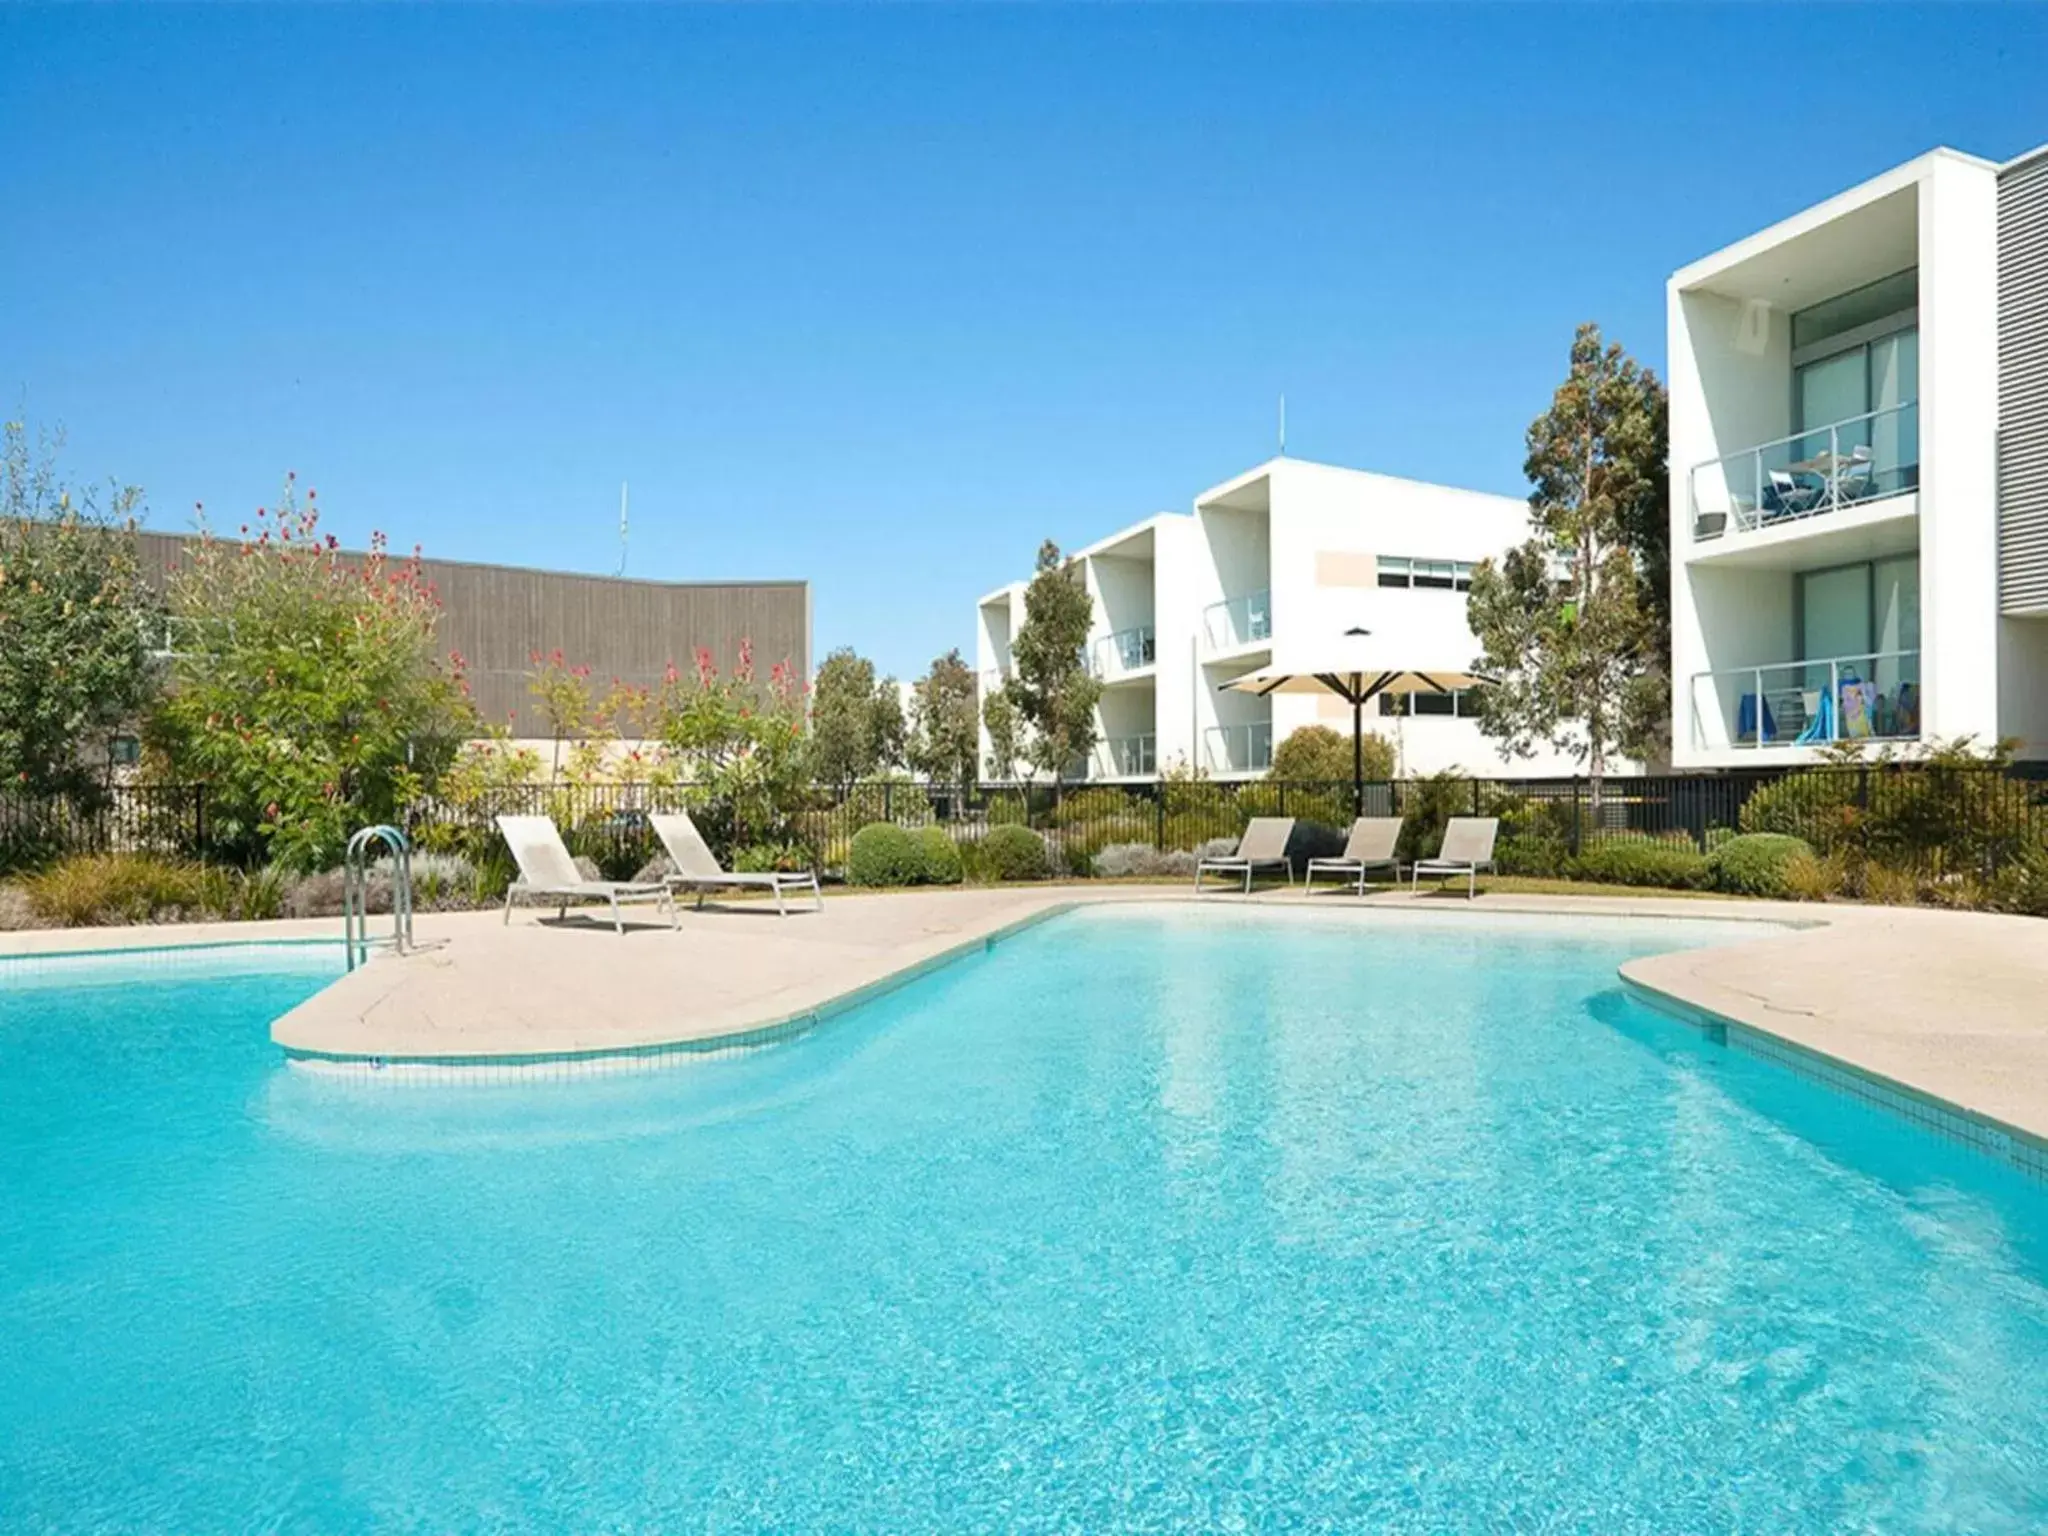 Property building, Swimming Pool in Coast Resort Merimbula